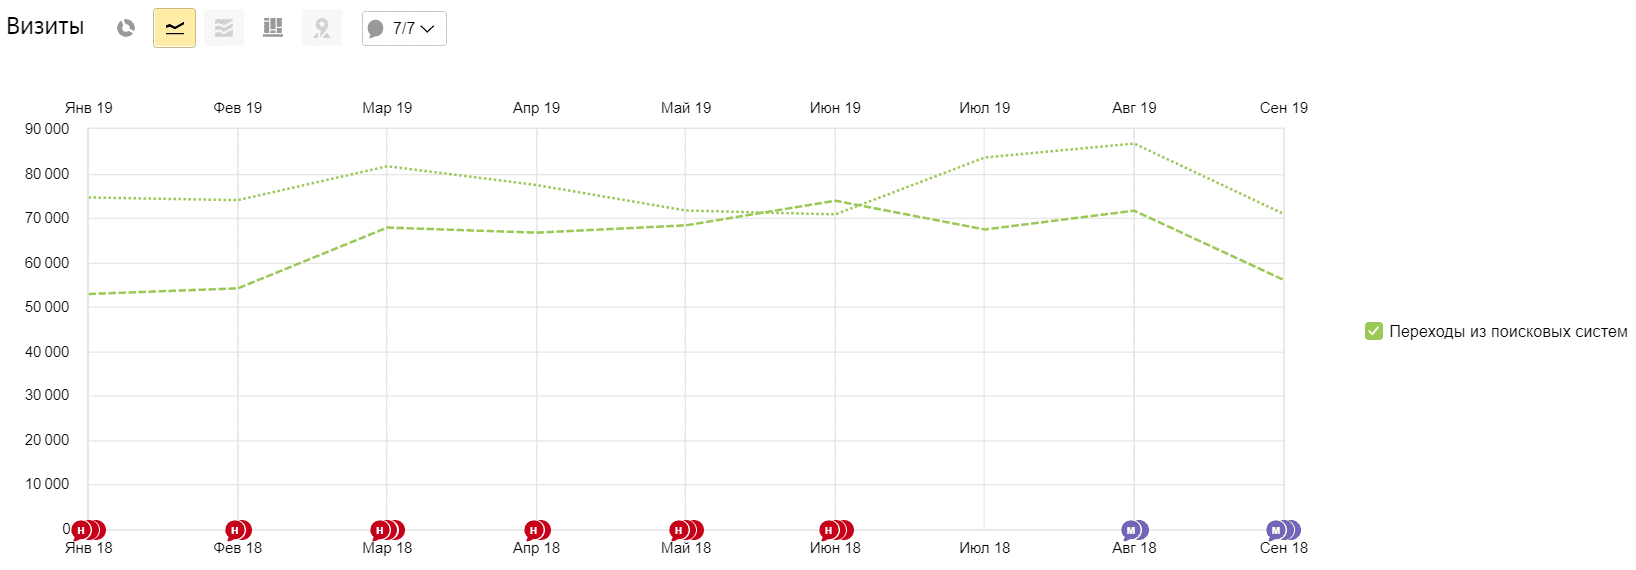 Динамика трафика до и после SEO-продвижения по данным Яндекса